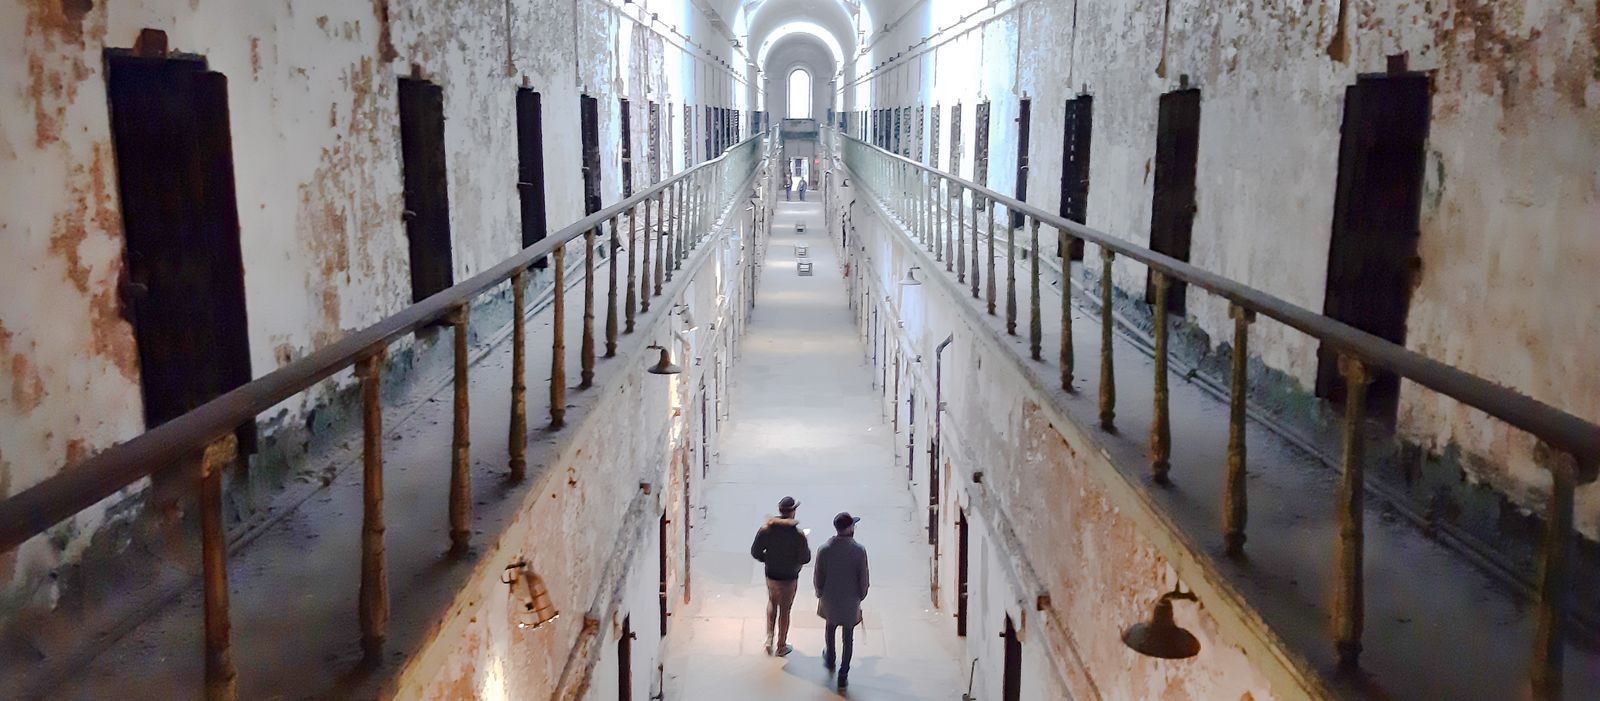 Impressionen der ehemaligen Strafanstalt Eastern State Penitentiary in Philadelphia